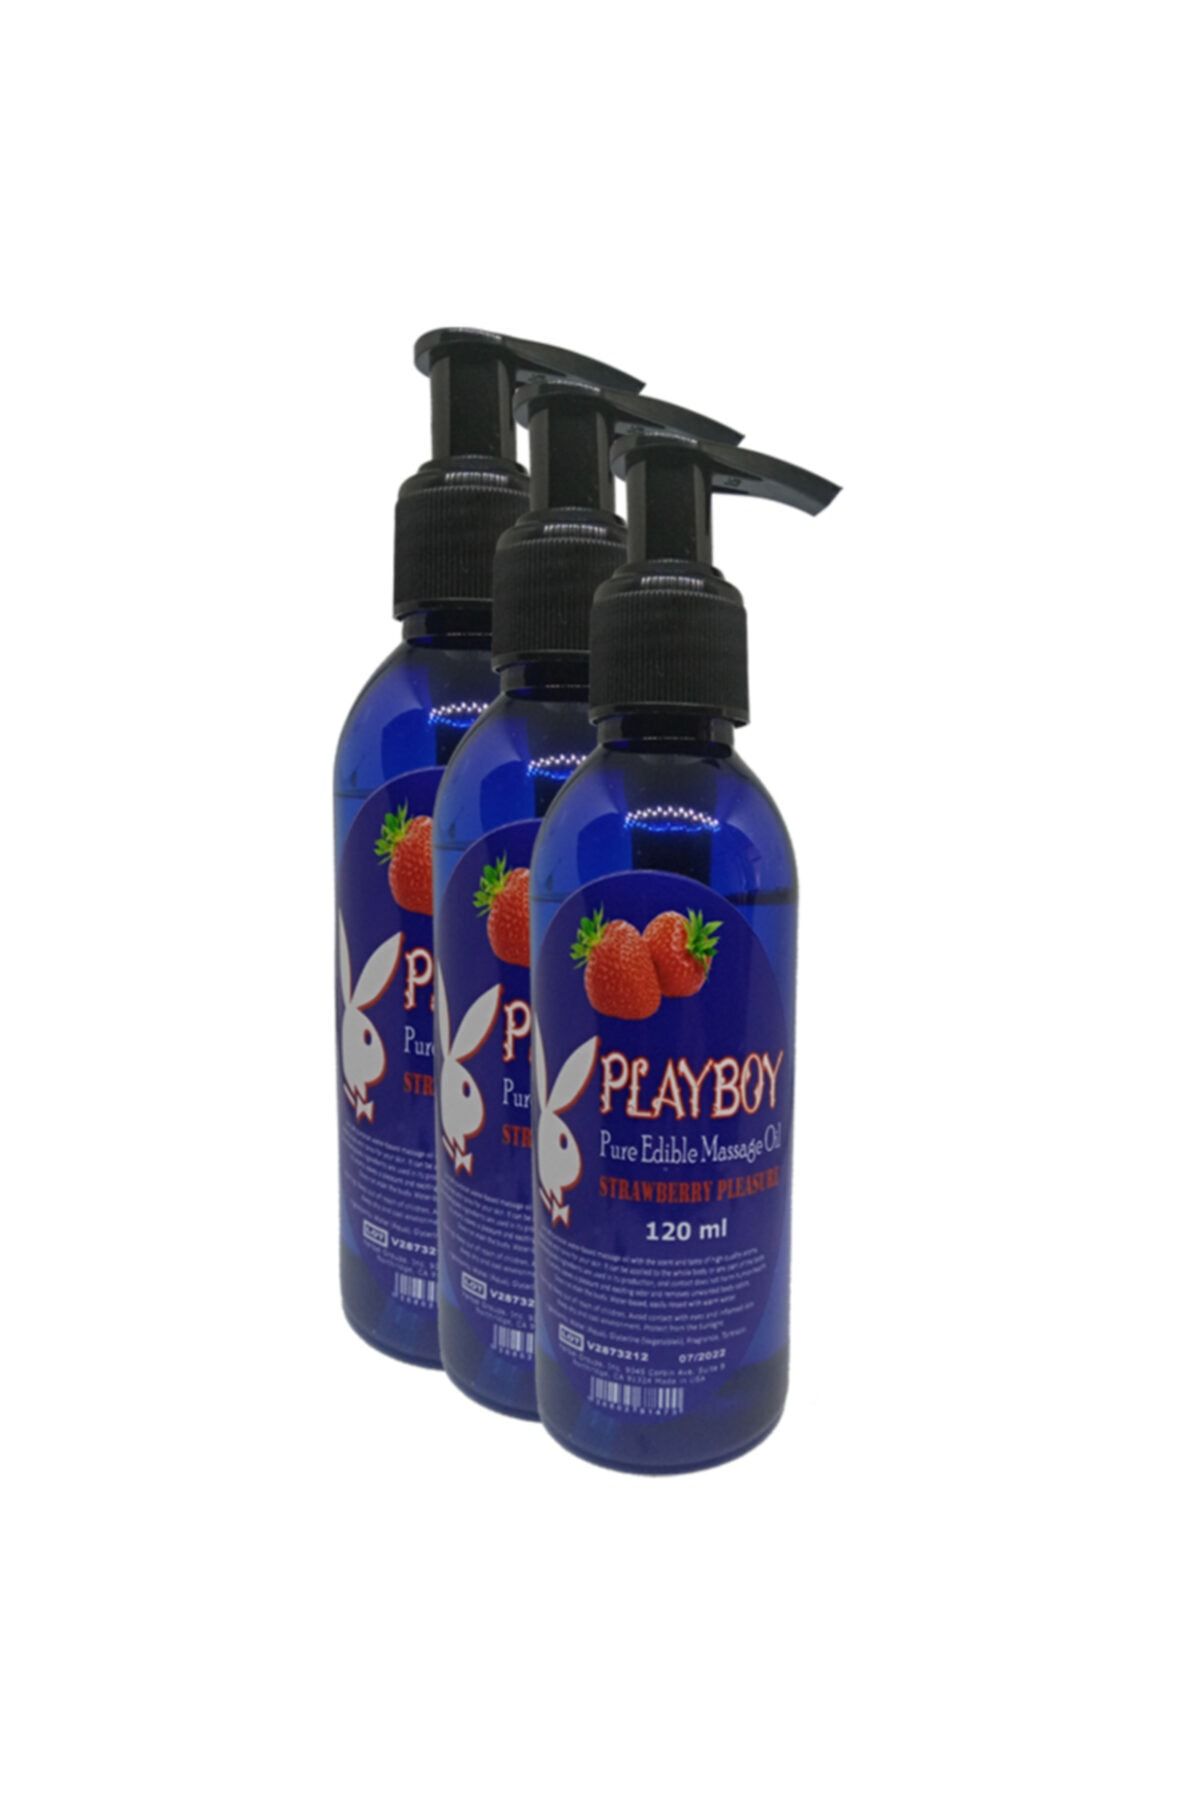 Playboy Pure Edible Massage Oil 120ml Çilek Aromalı Masaj Yağı 3 Adet